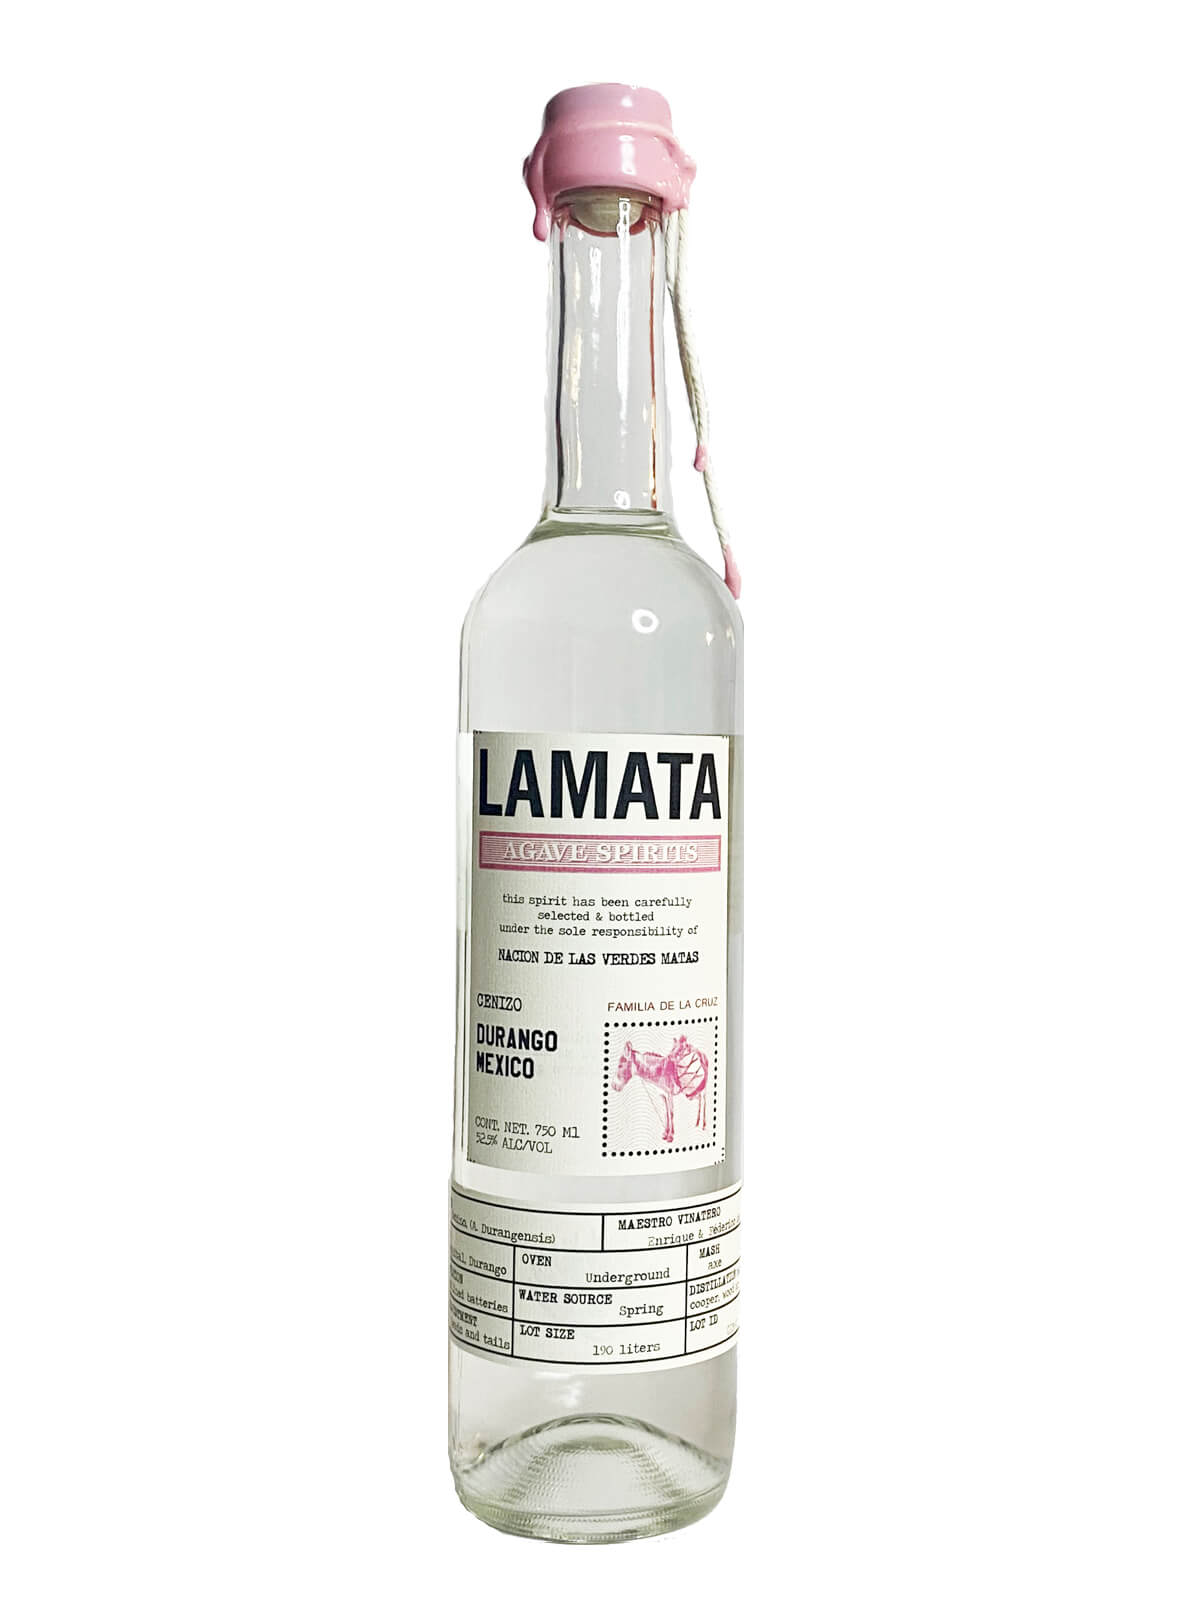 Lamata Cenizo Durango bottle